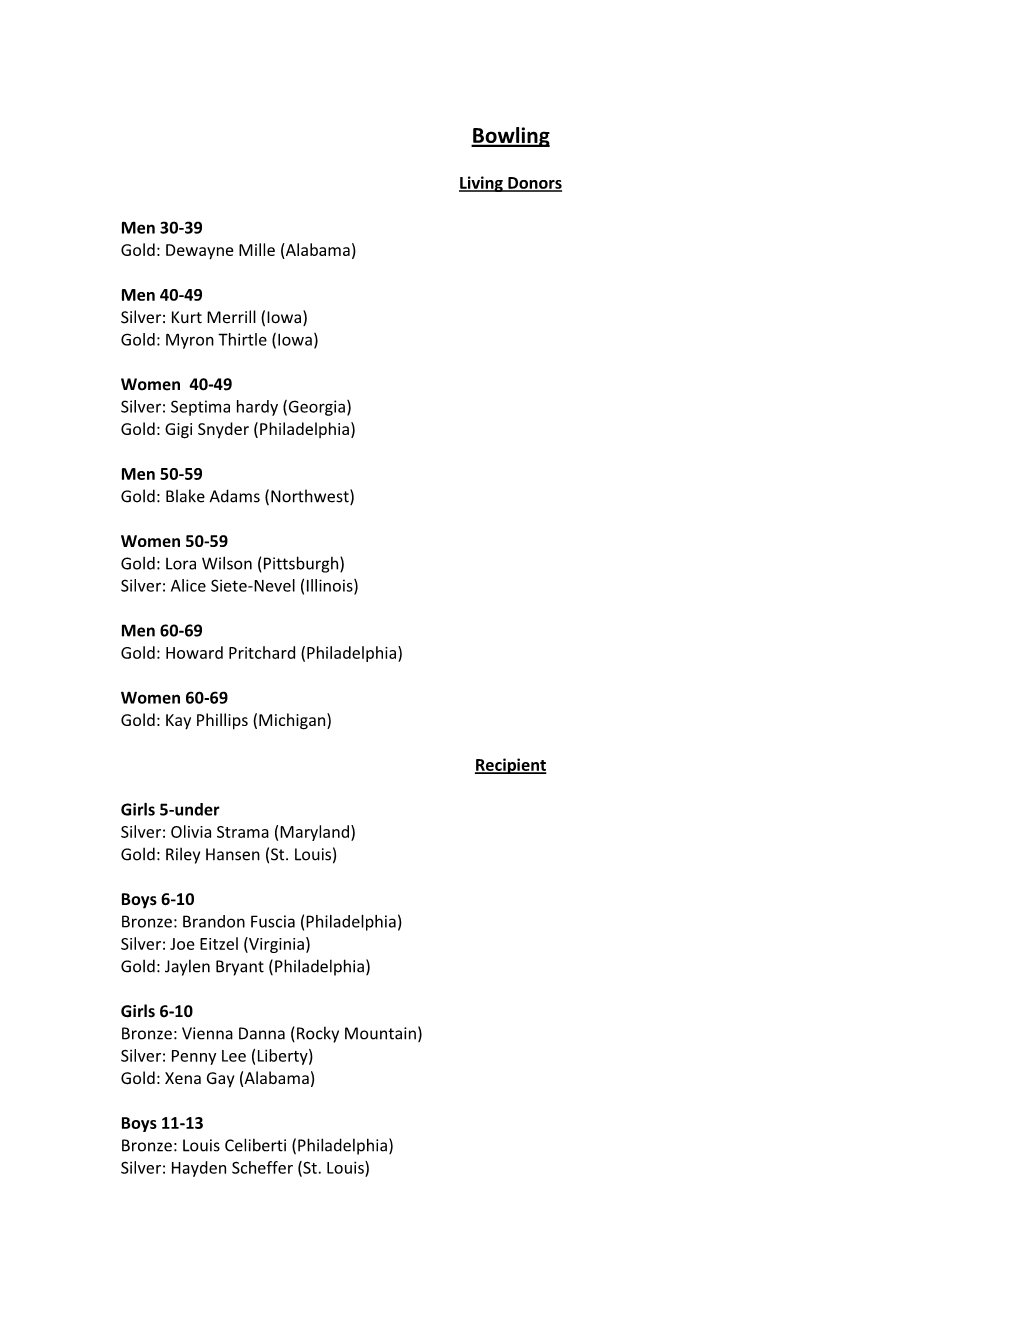 2012 TGA Bowling Singles Results